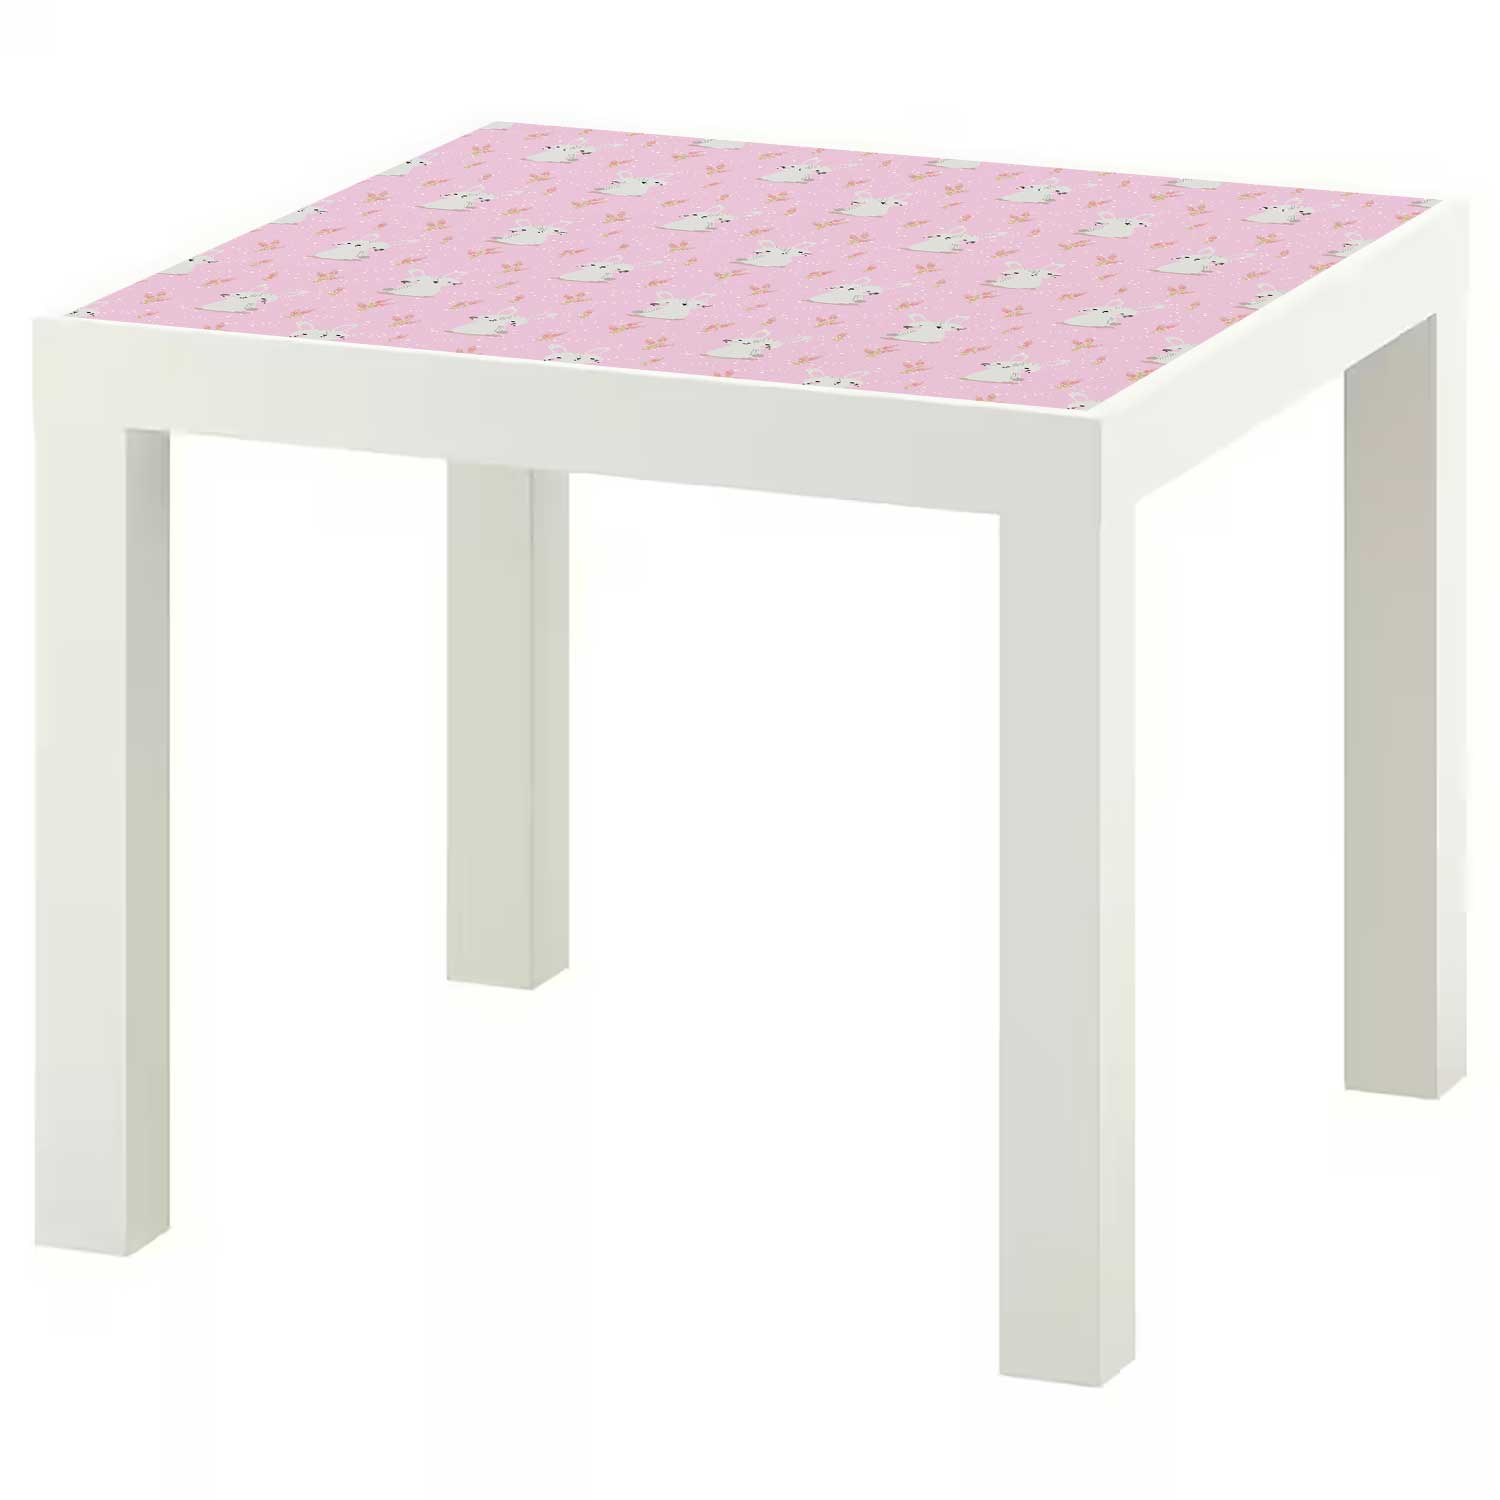 Möbelfolie Kinder für IKEA Lack Tisch 55x55 cm 'Hasen'